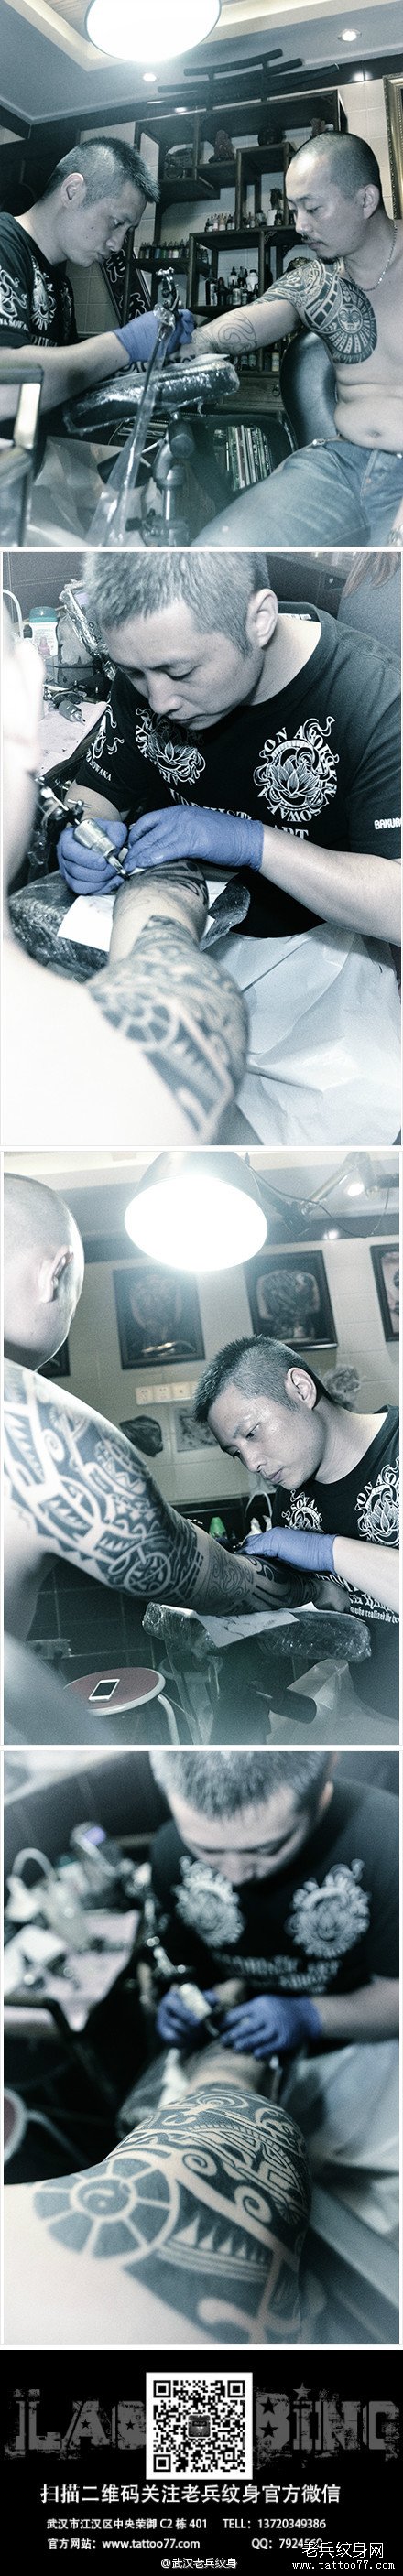 2013年9月5日图腾花臂纹身作品制作过程